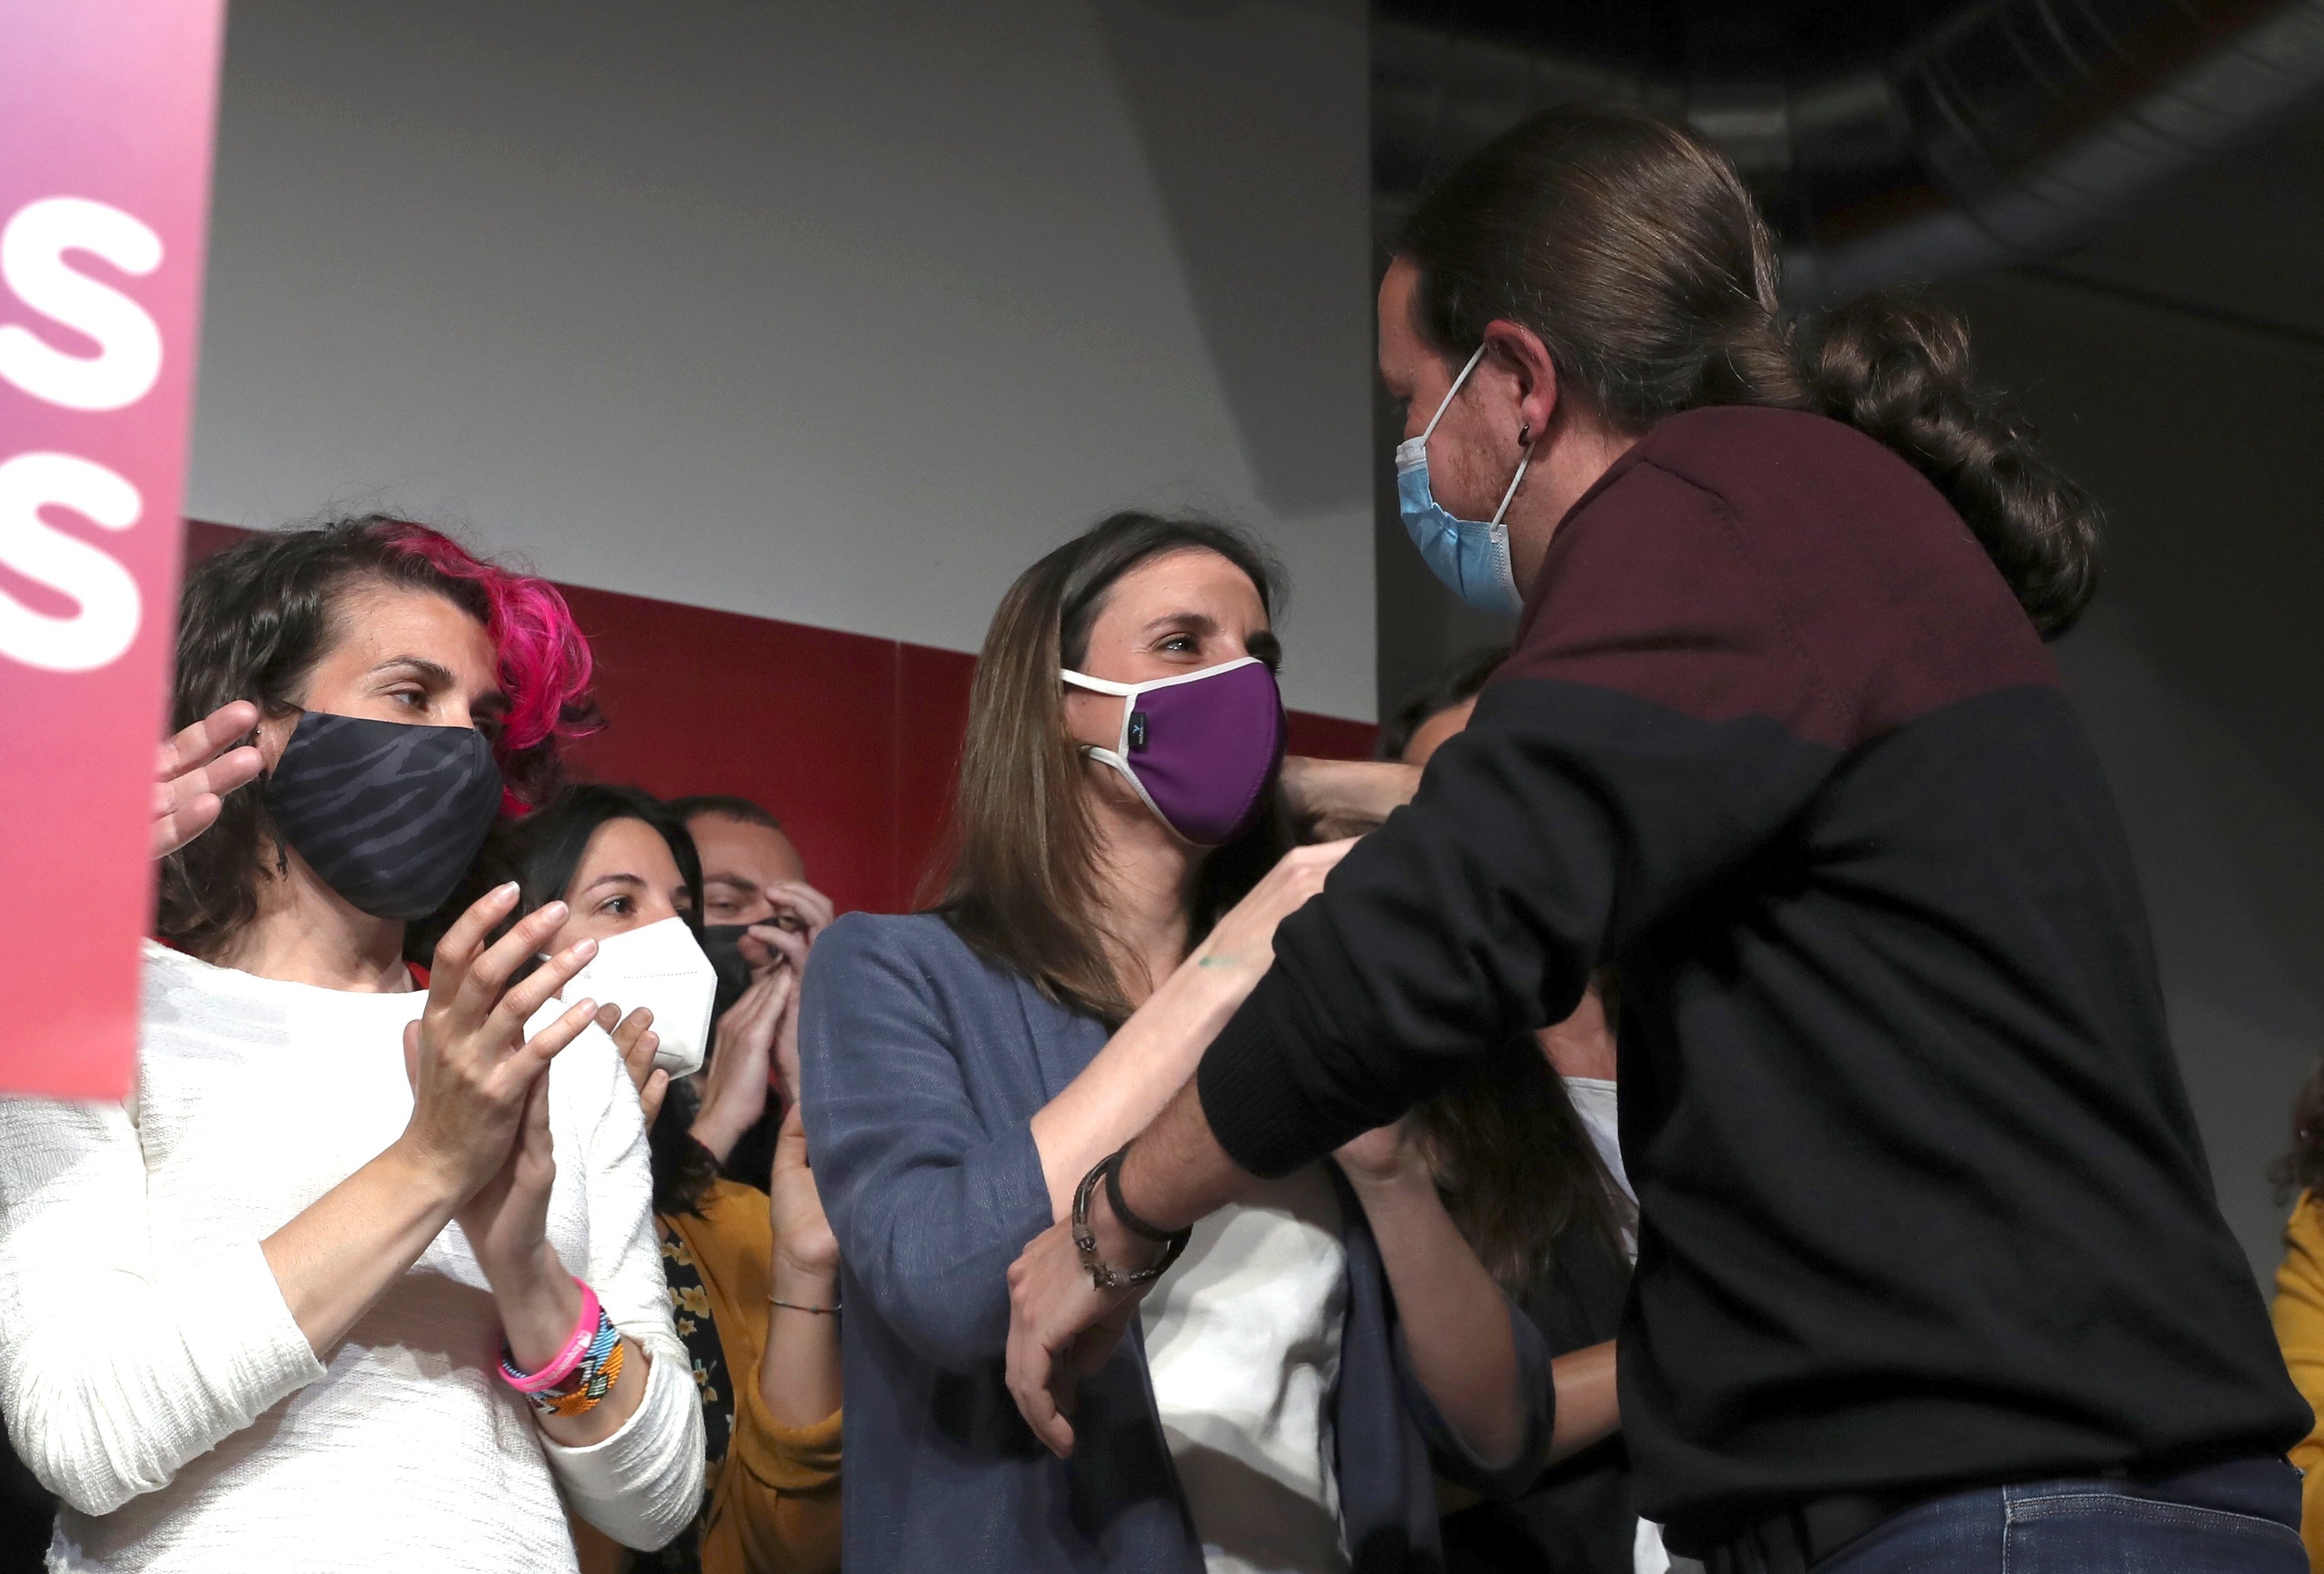 Esclaten les tensions entre IU i Podemos: un àudio revela el guirigall